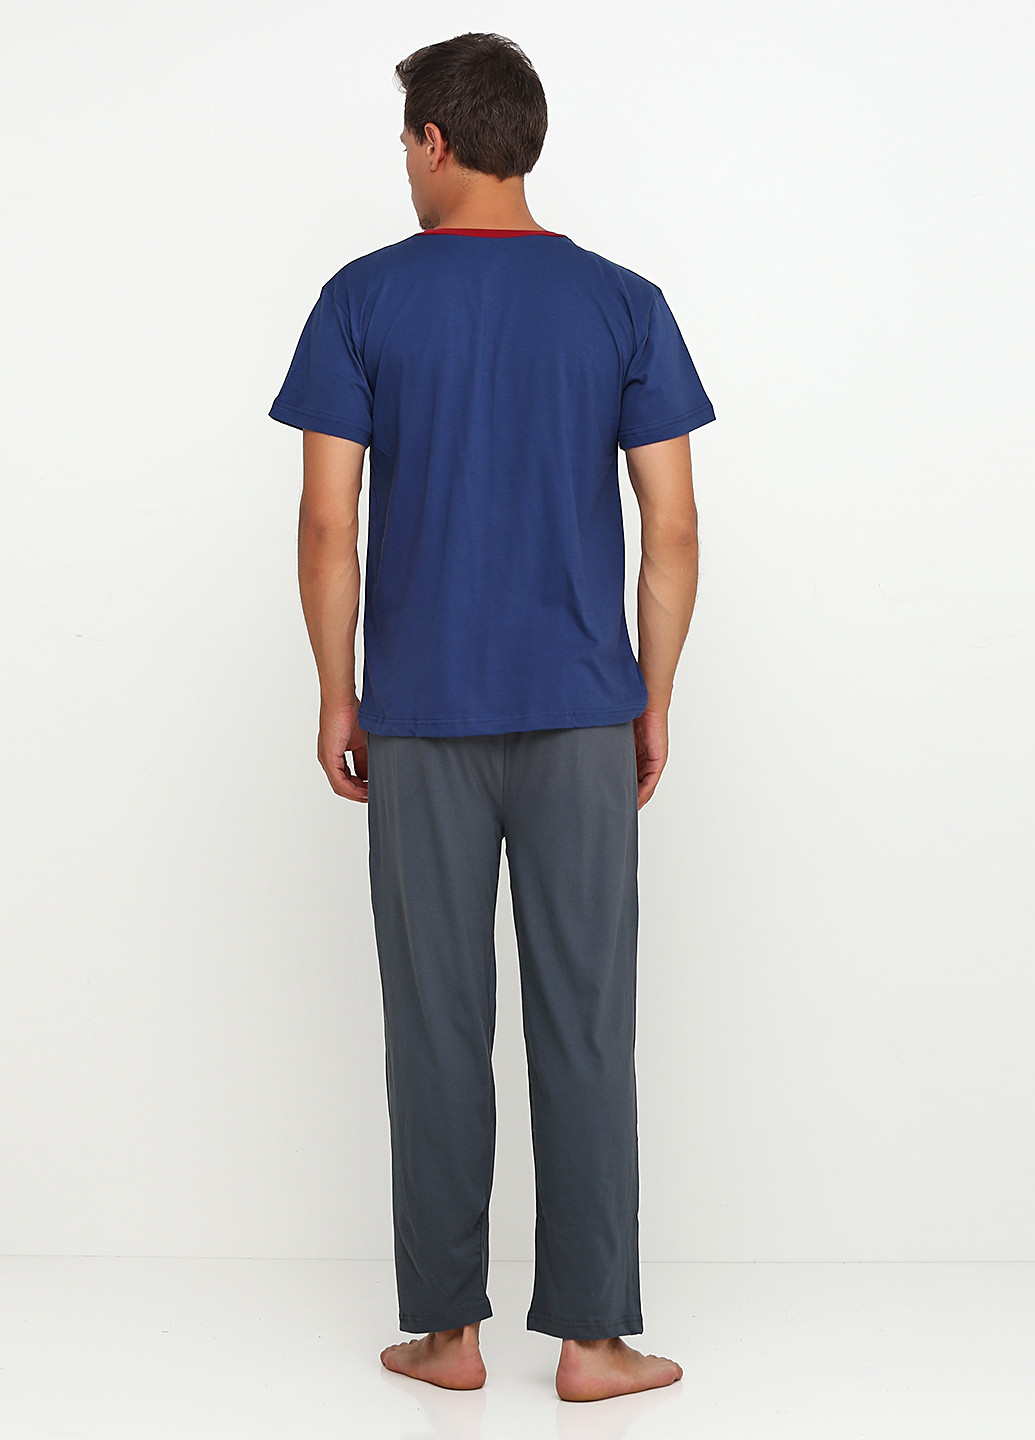 Пижама (футболка, брюки) Devino полоска тёмно-синяя домашняя